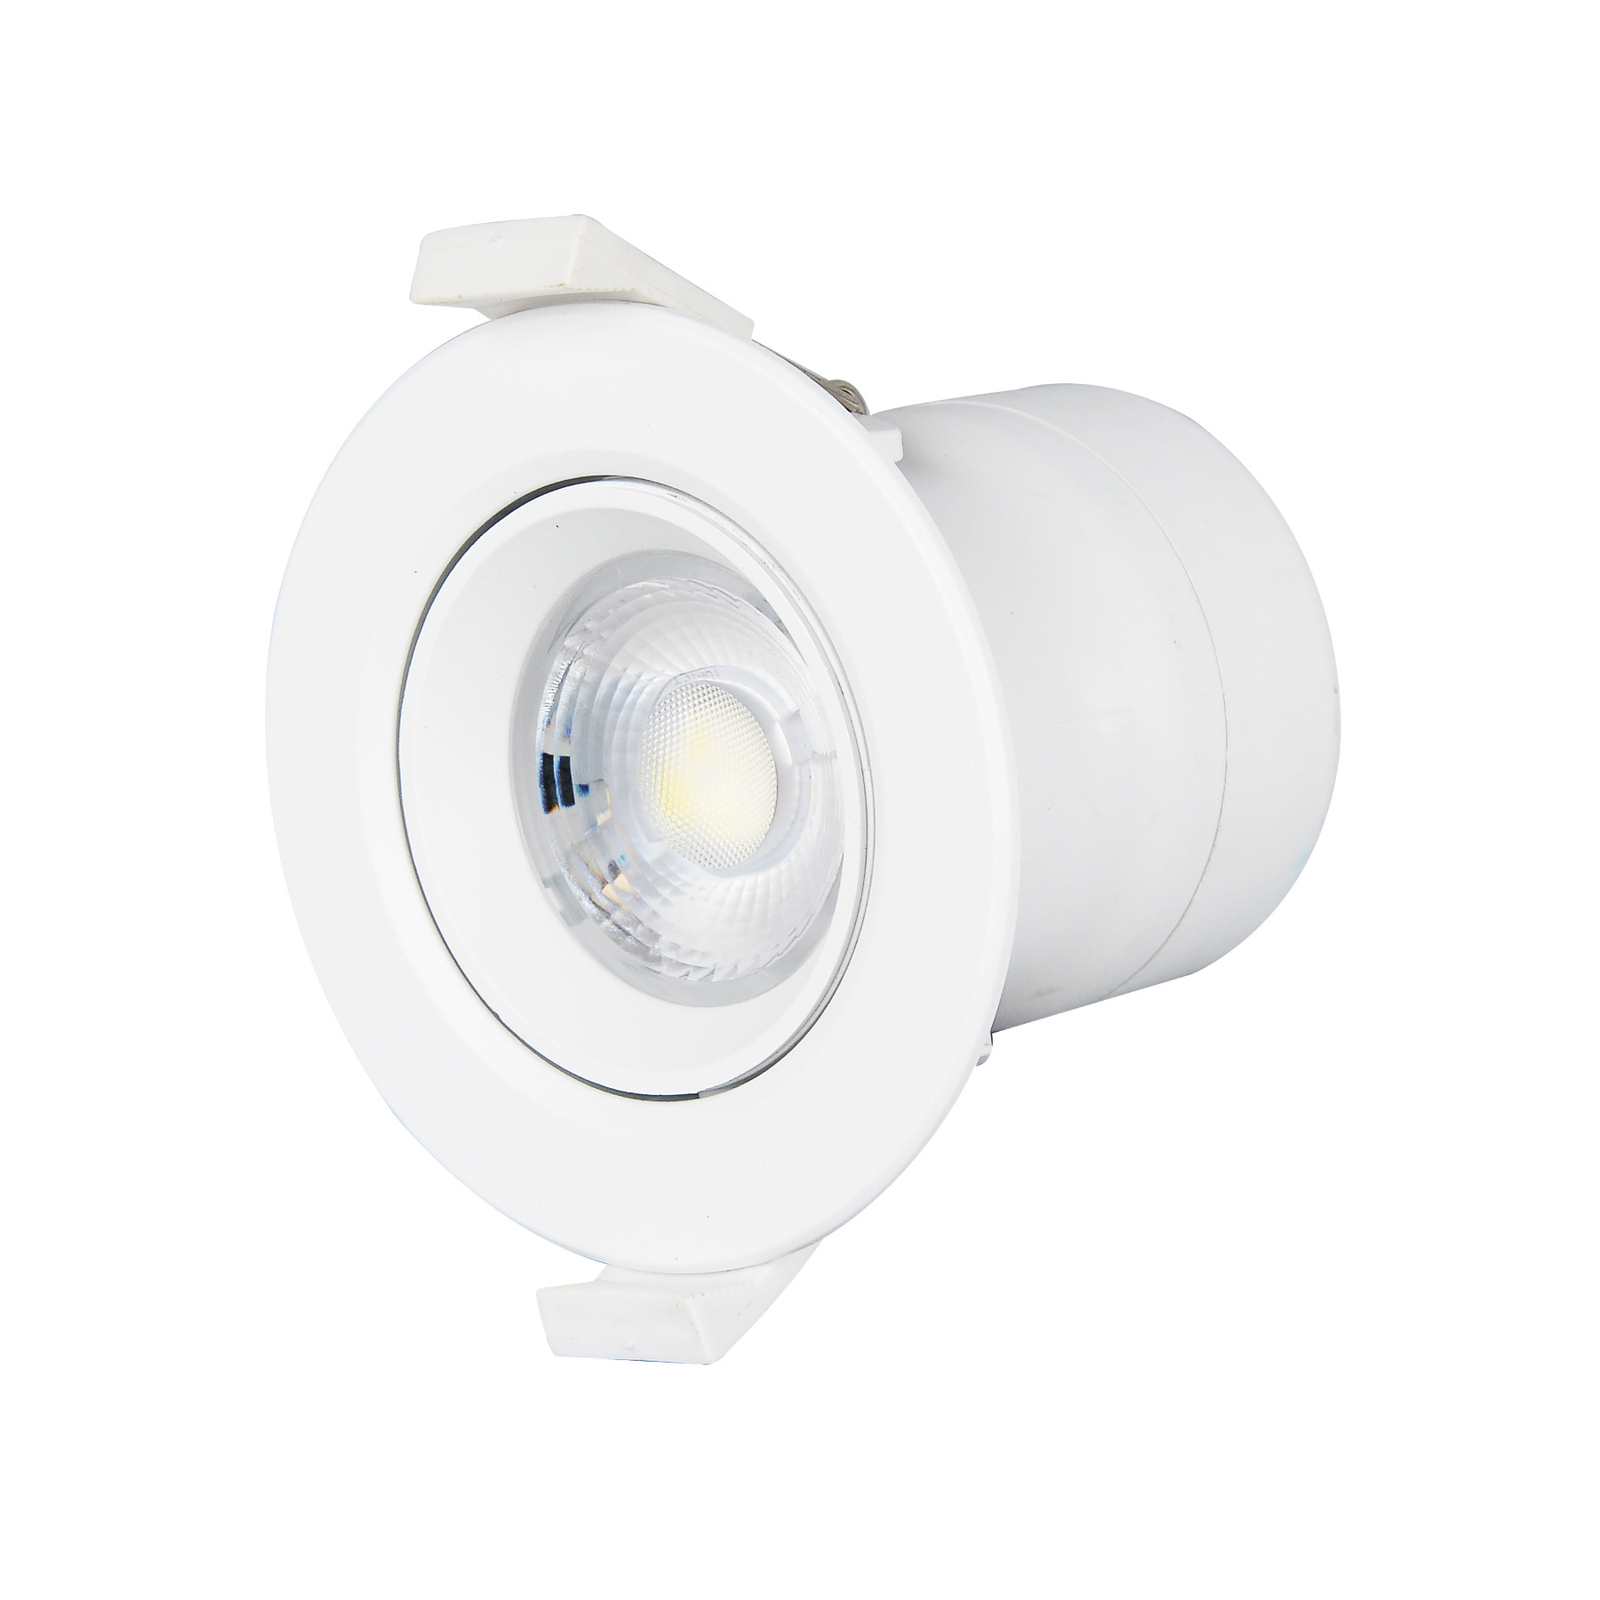 Prios LED lâmpada de encastrar Shima, branco, 7W, 3000K, 10pcs, regulável